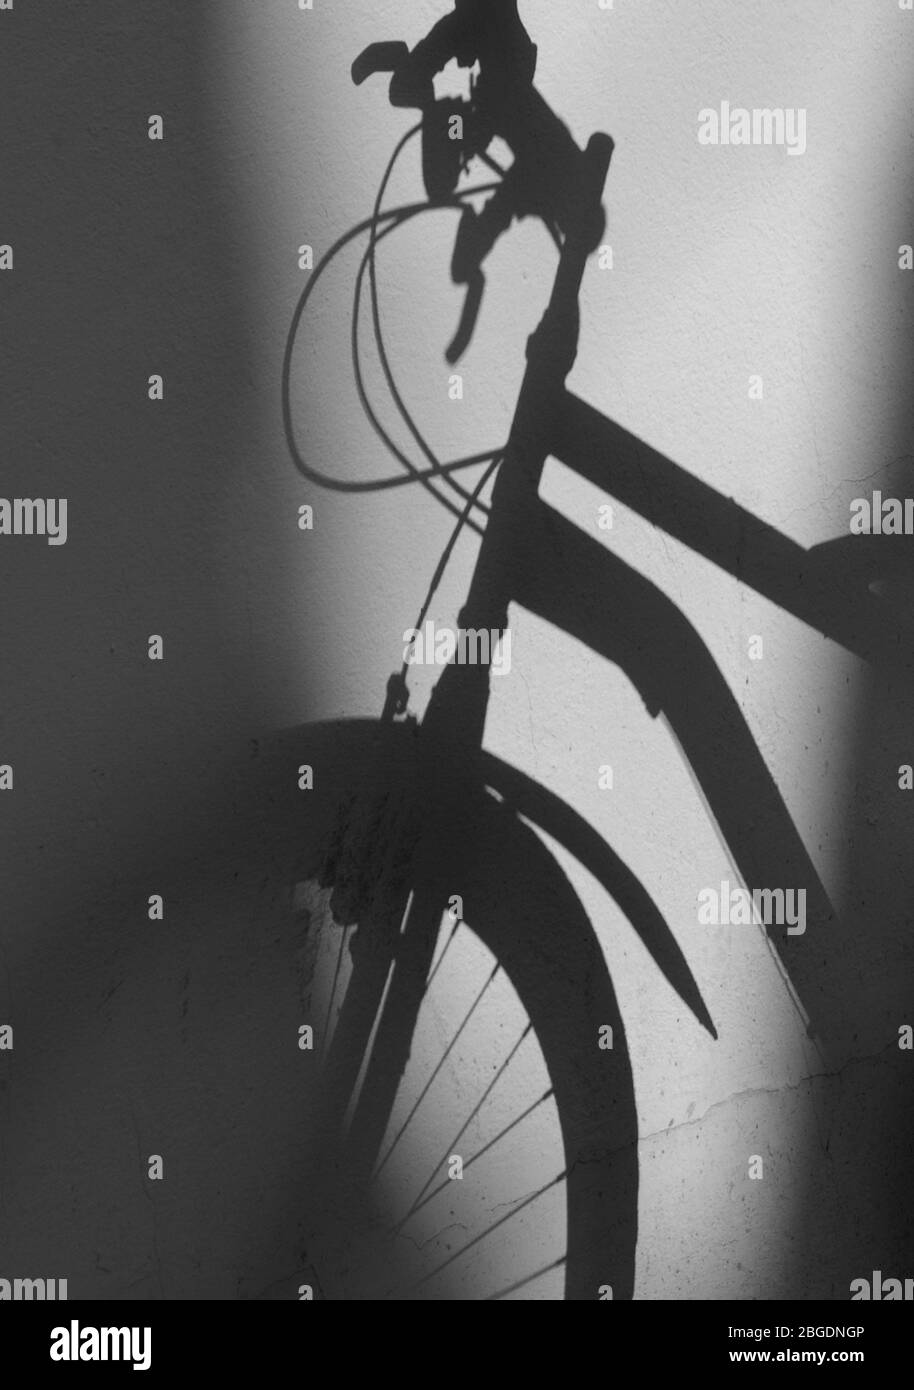 Ombra della bicicletta contro pareti piane che mostrano maniglie dei freni, cavi dei freni, ruota anteriore e parte del telaio in ombra Foto Stock